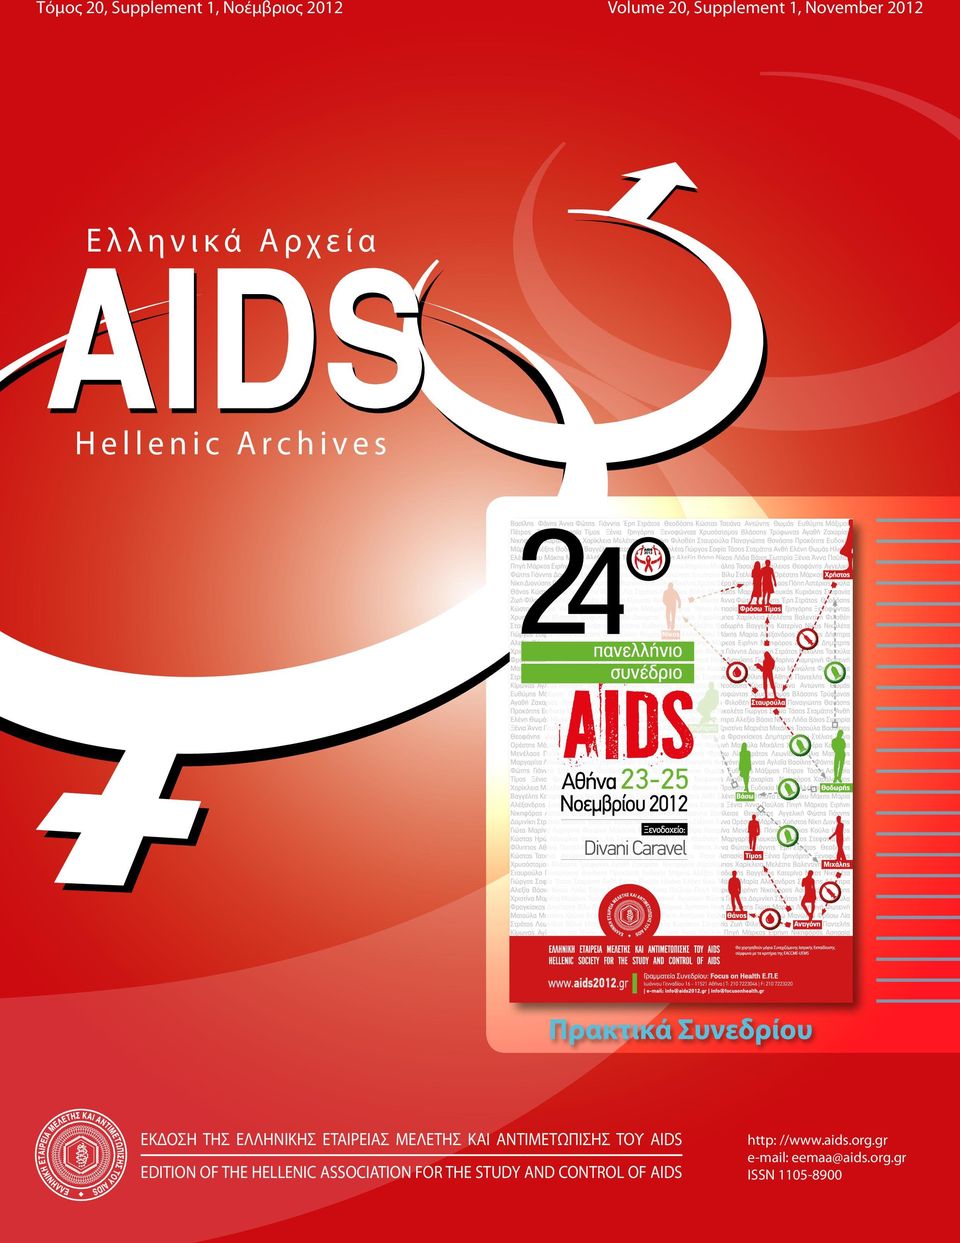 ΜΕΛΕΤΗΣ ΚΑΙ ΑΝΤΙΜΕΤΩΠΙΣΗΣ ΤΟΥ AIDS EDITION OF THE HELLENIC ASSOCIATION FOR THE